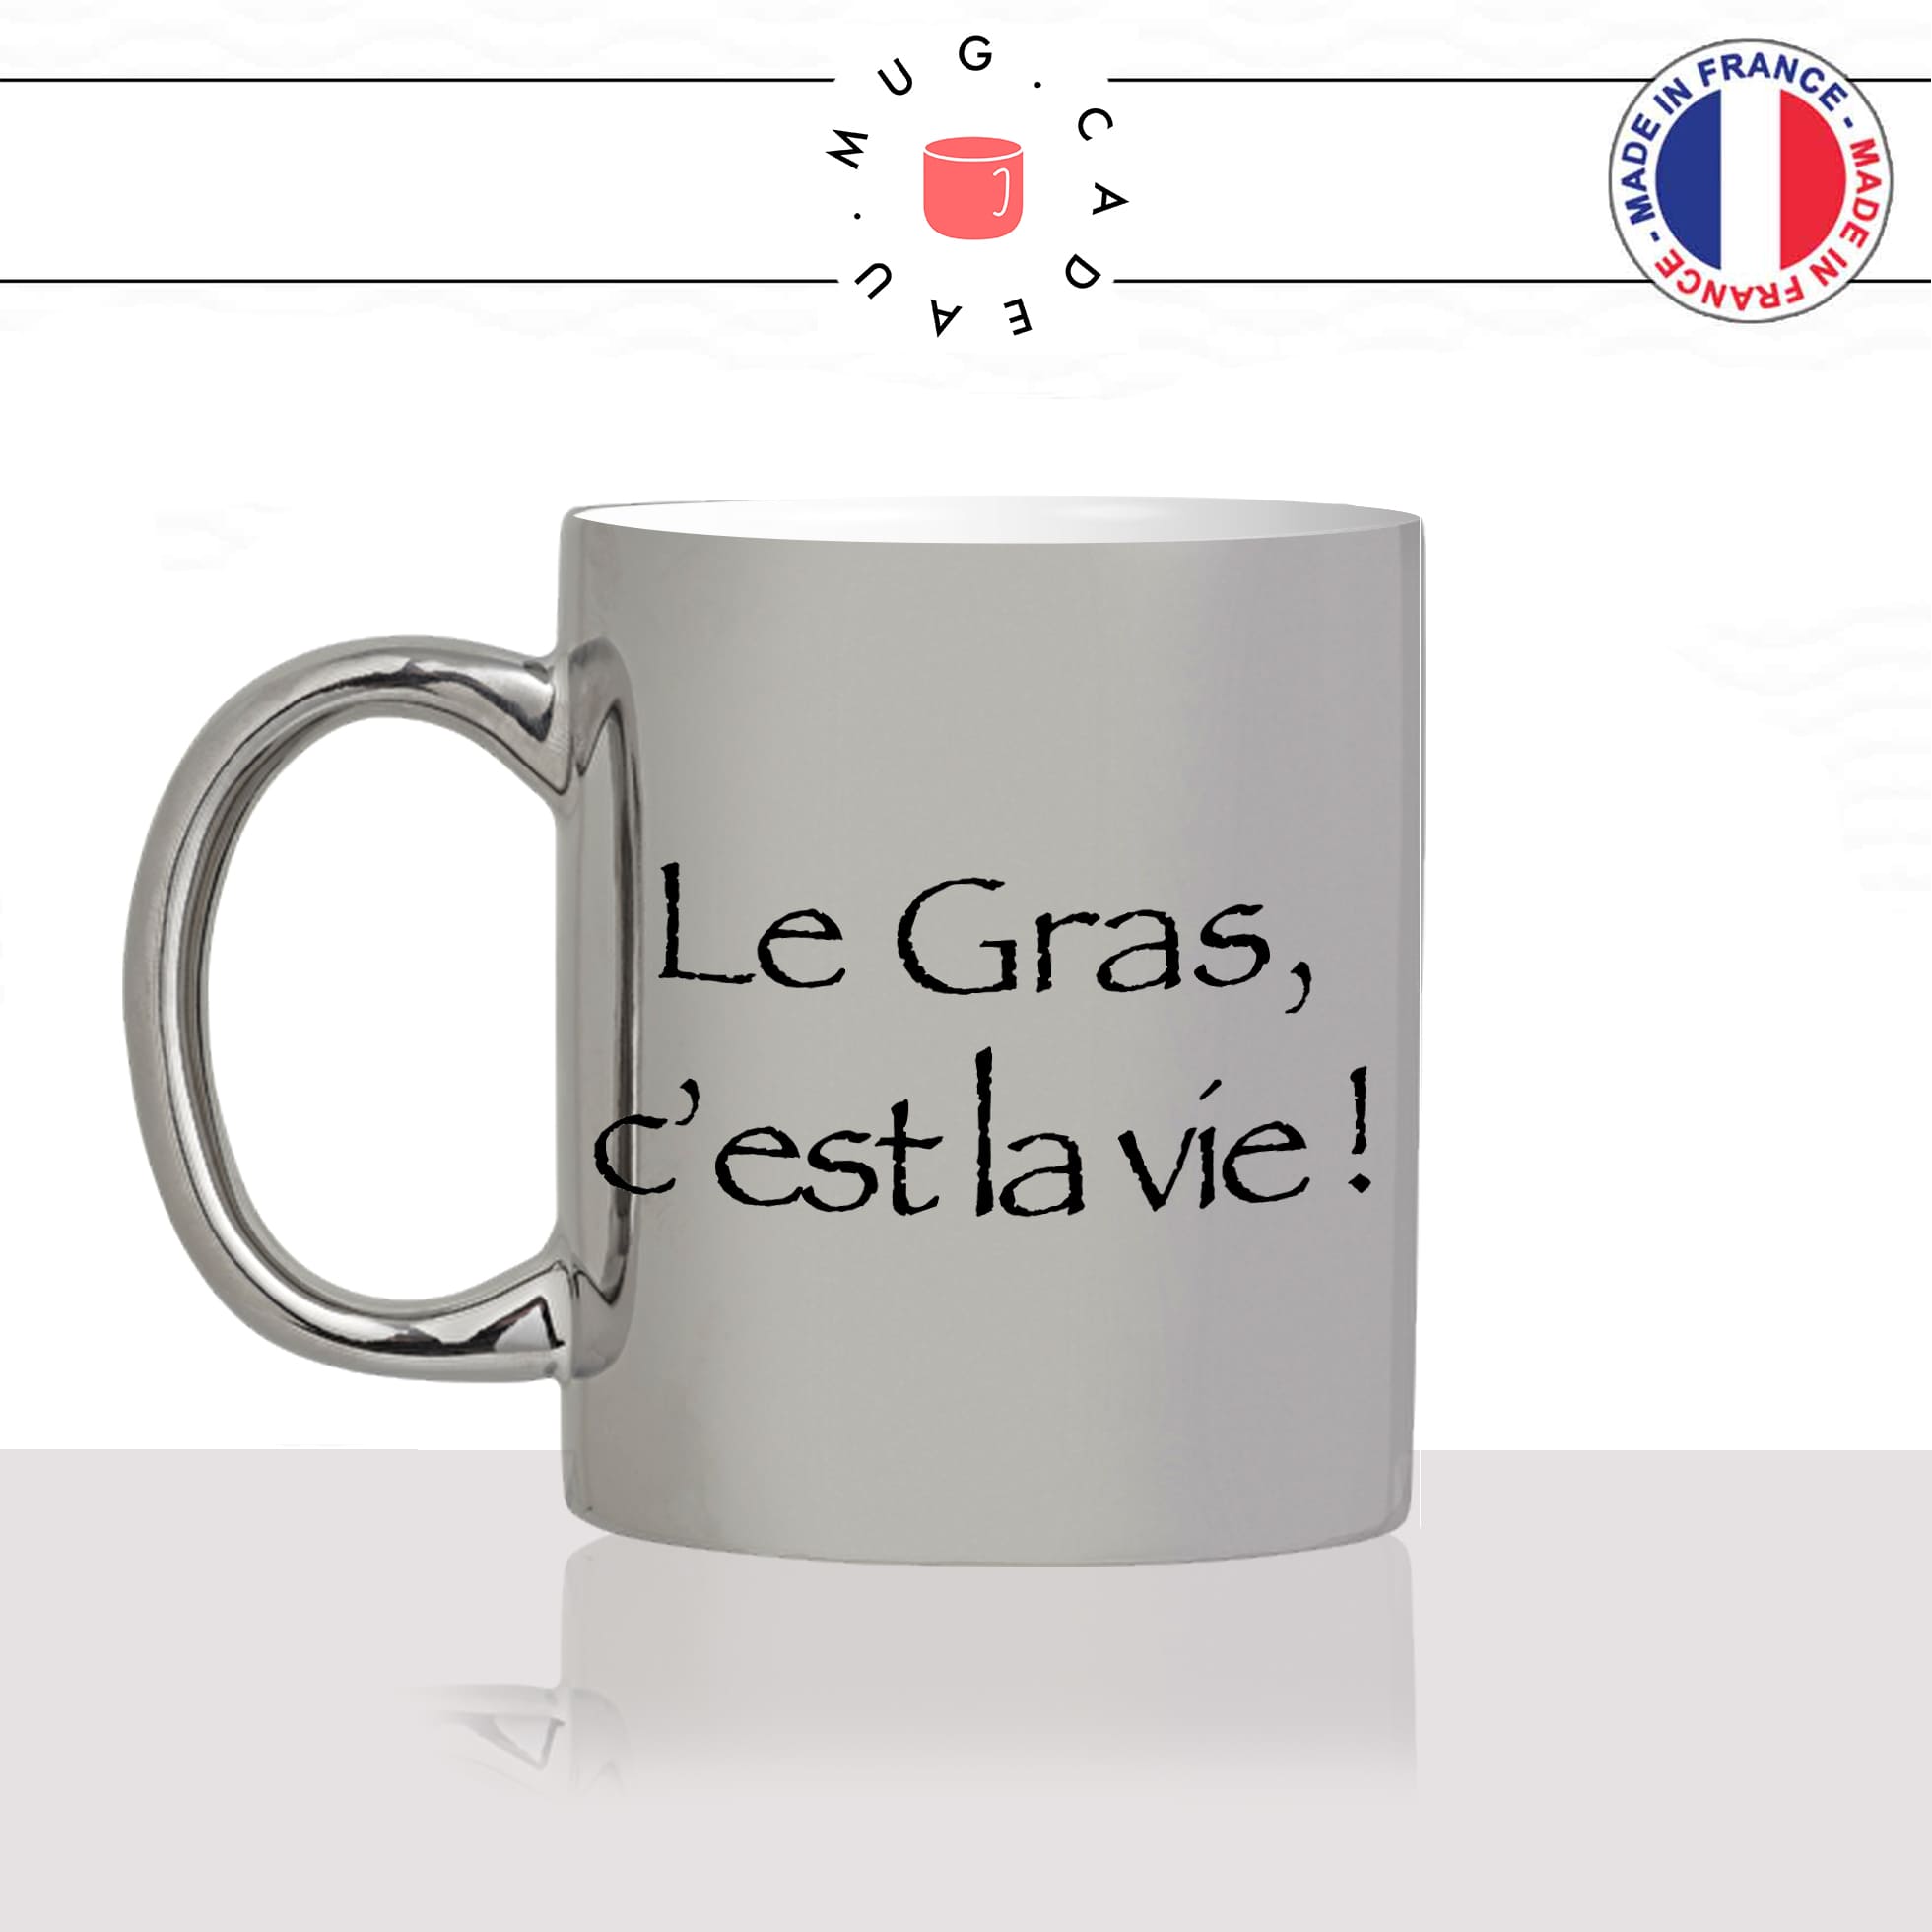 mug-tasse-argent-argenté-silver-série-francaise-culte-kaamelott-arthur-le-gras-cest-la-vie-caradoc-humour-télé-idée-cadeau-fun-cool-café-thé